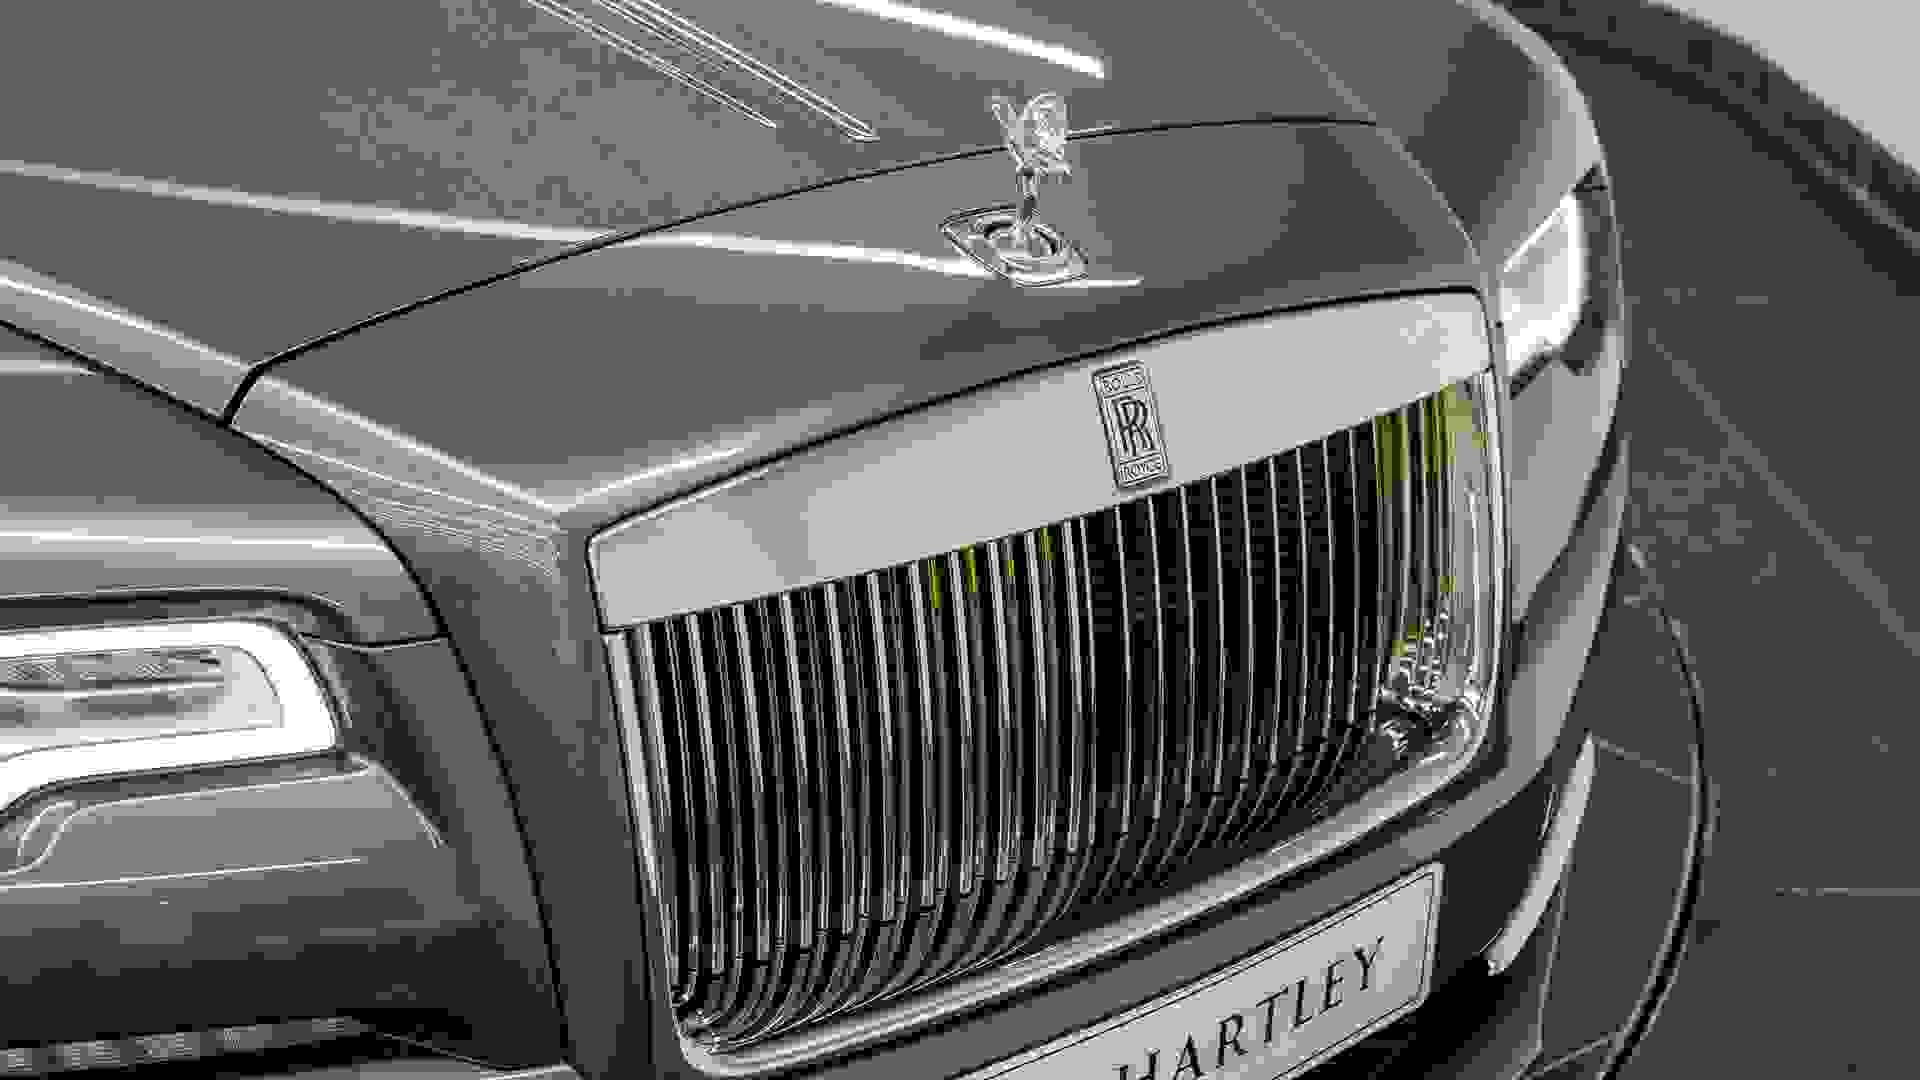 Rolls-Royce Wraith Photo ebaa66a7-be78-4a4a-8044-5d73f21724ef.jpg